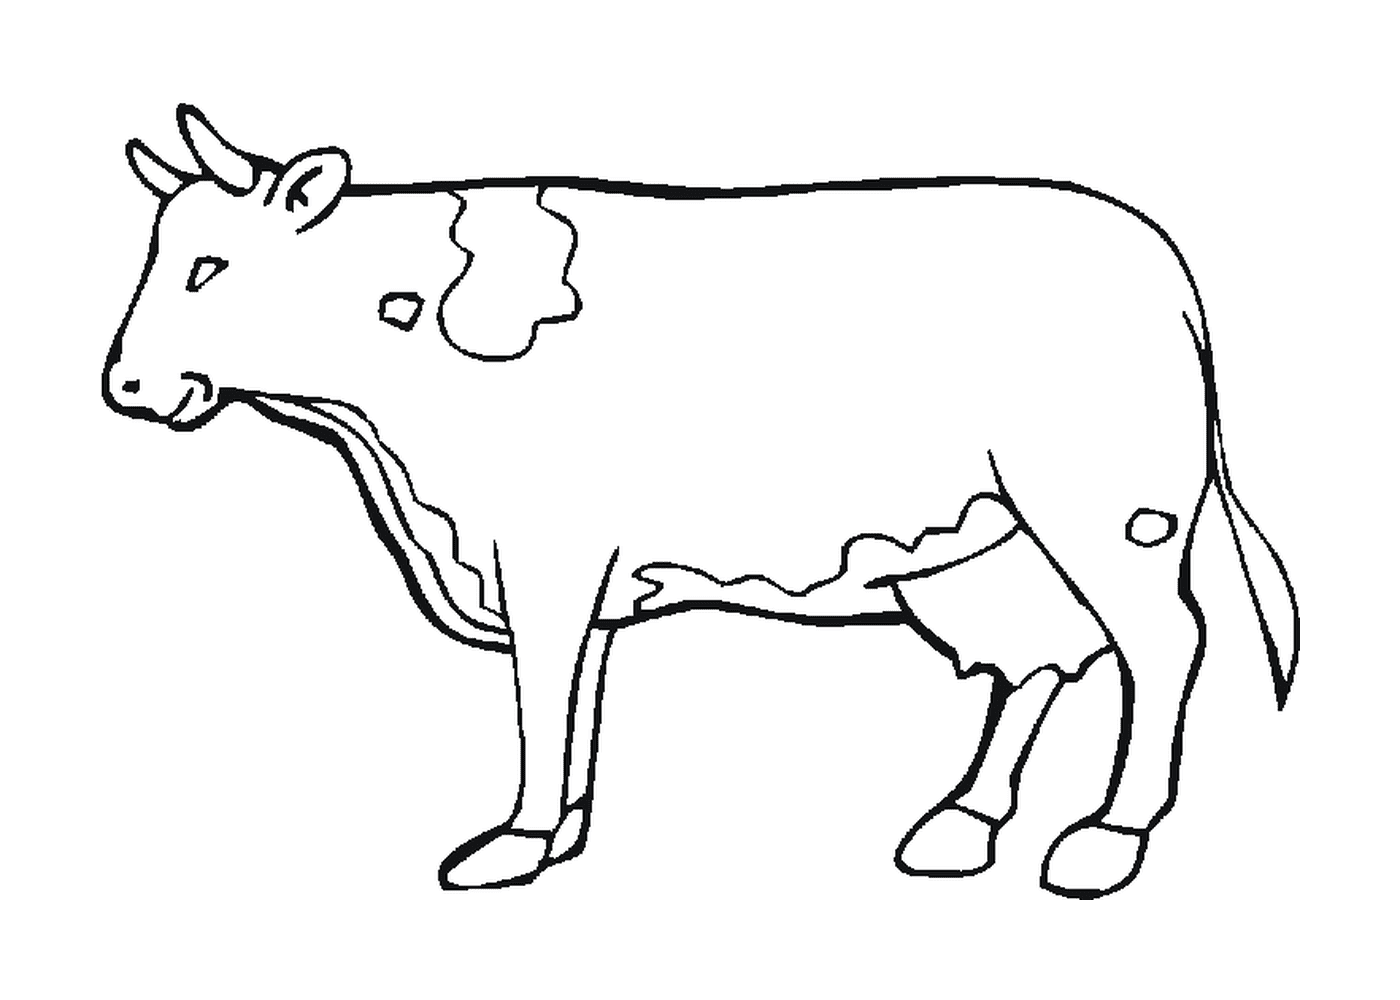  गाय 